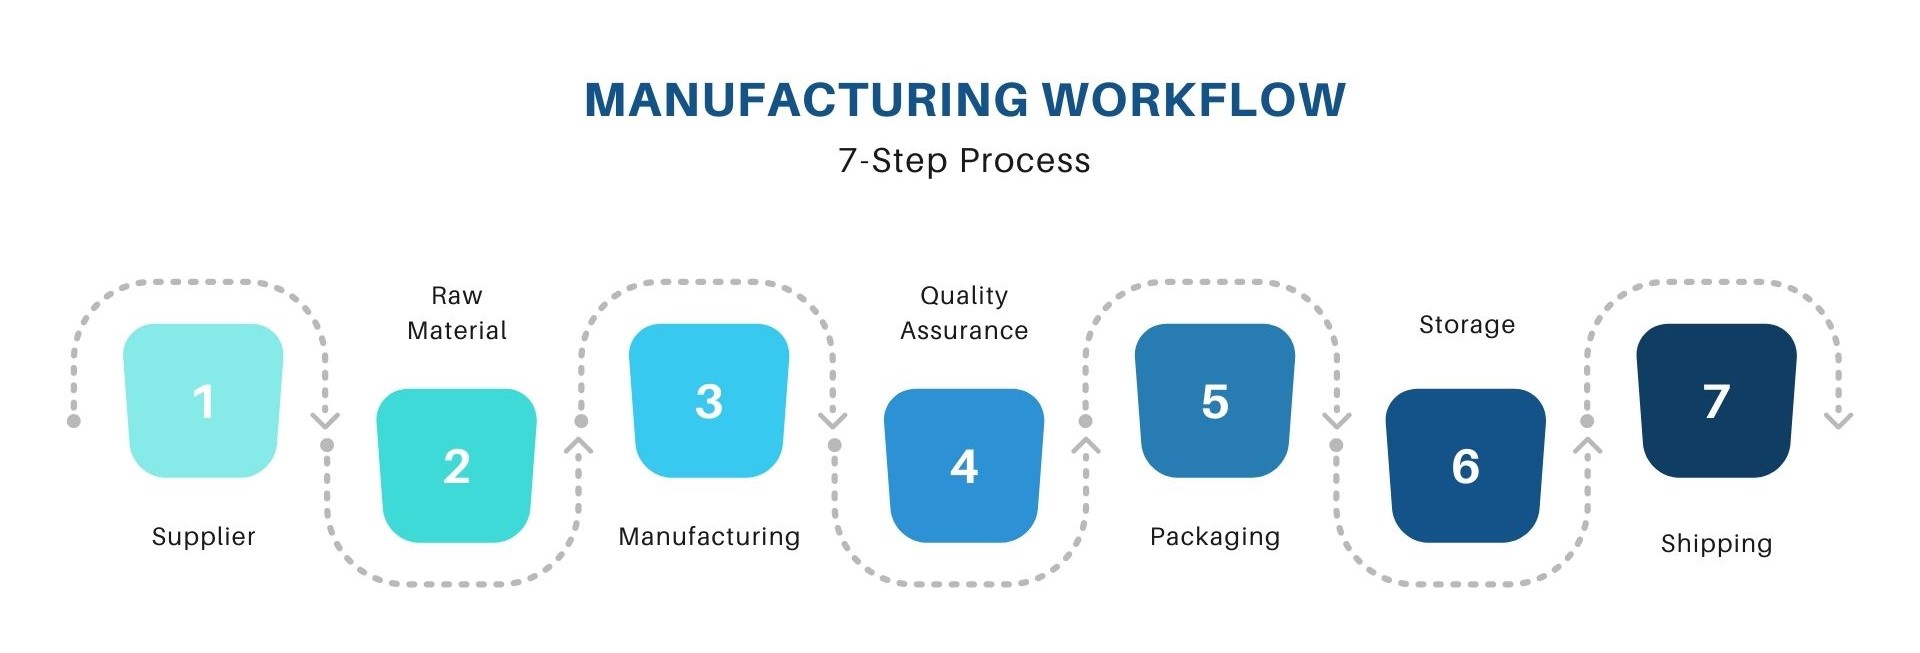 Manufacturing workflow